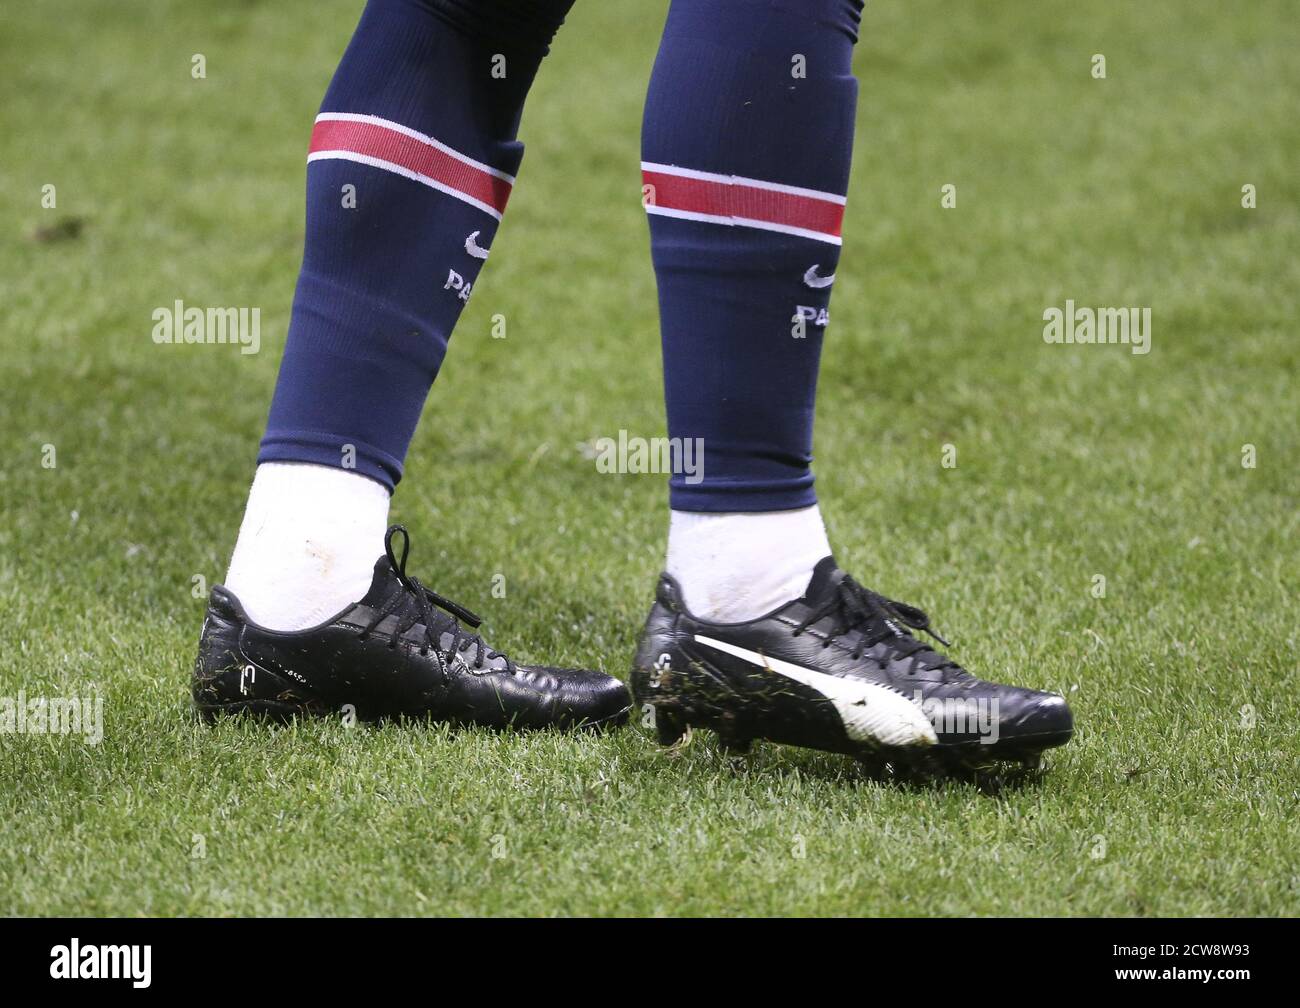 Neymar Jr. Del PSG con sus nuevos zapatos Puma El campeonato francés Ligue 1 partido de fútbol entre Stade de Reims y París Saint-Germain en el se Fotografía de stock -